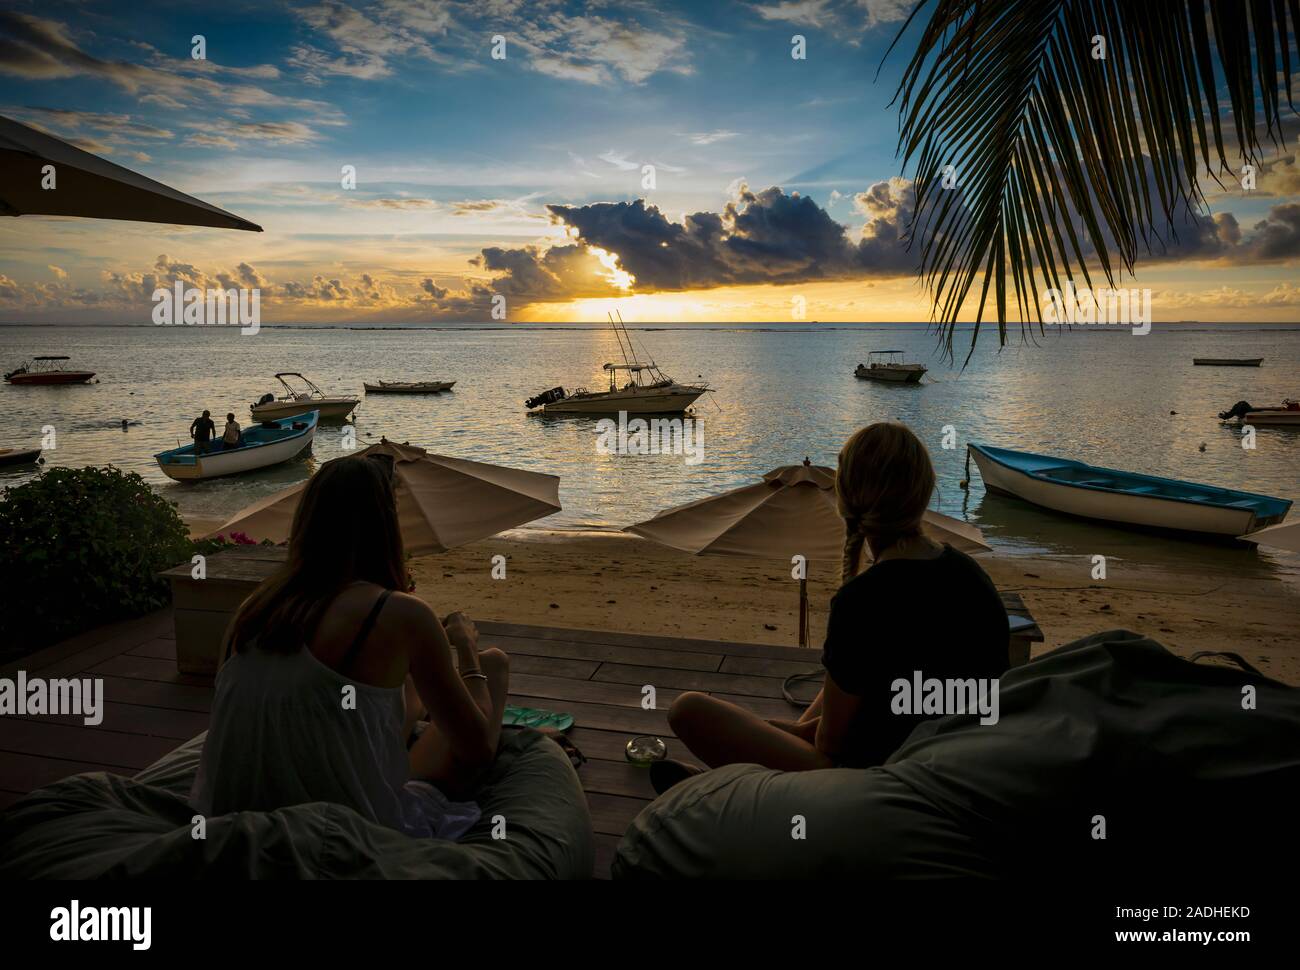 Warten auf den Sonnenuntergang in der Bucht Hotel, Riviere Noir oder Strand Tamarin Black River, Mauritius, Maskarenen Inseln. Stockfoto